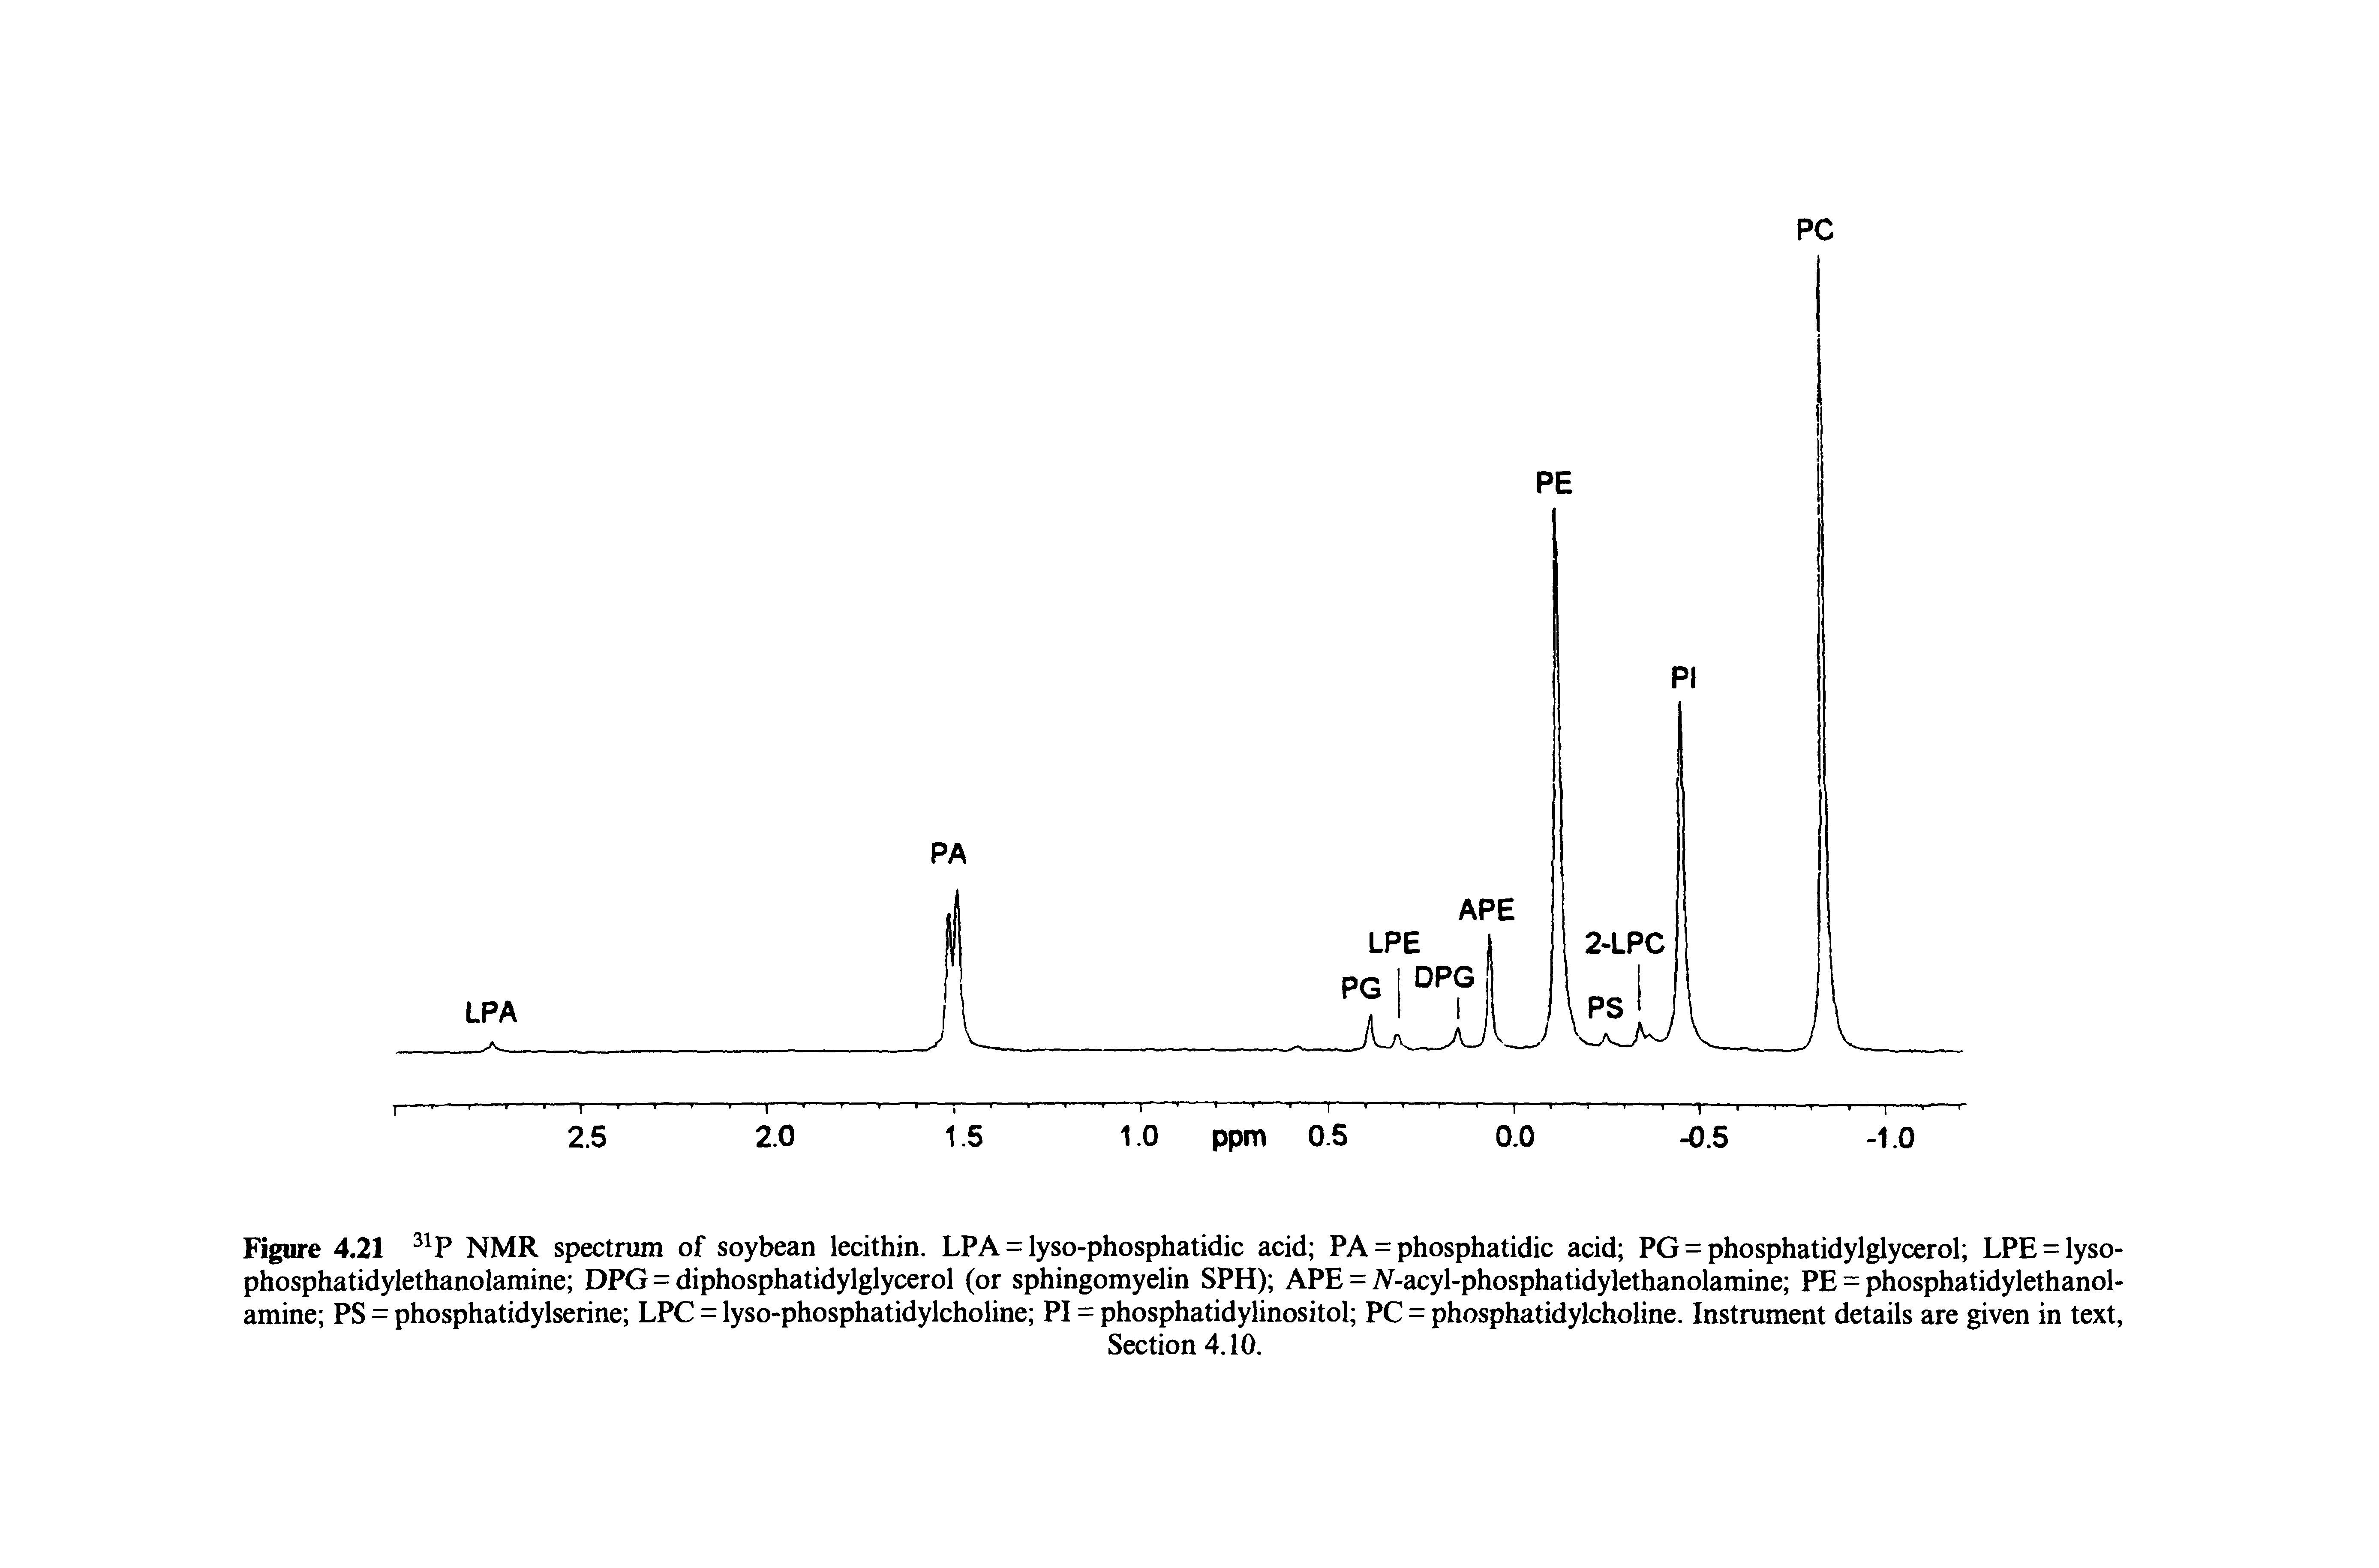 Figure 4.21 NMR spectrum of soybean lecithin. LPA = lyso-phosphatidic acid PA = phosphatidic acid PG = phosphatidylglycerol LPE = lyso-phosphatidylethanolamine DPG = diphosphatidylglycerol (or sphingomyelin SPH) APE = A-acyl-phosphatidylethanolamine PE = phosphatidylethanol-amine PS = phosphatidylserine LPC = lyso-phosphatidylcholine PI = phosphatidylinositol PC = phosphatidylcholine. Instrument details are given in text,...